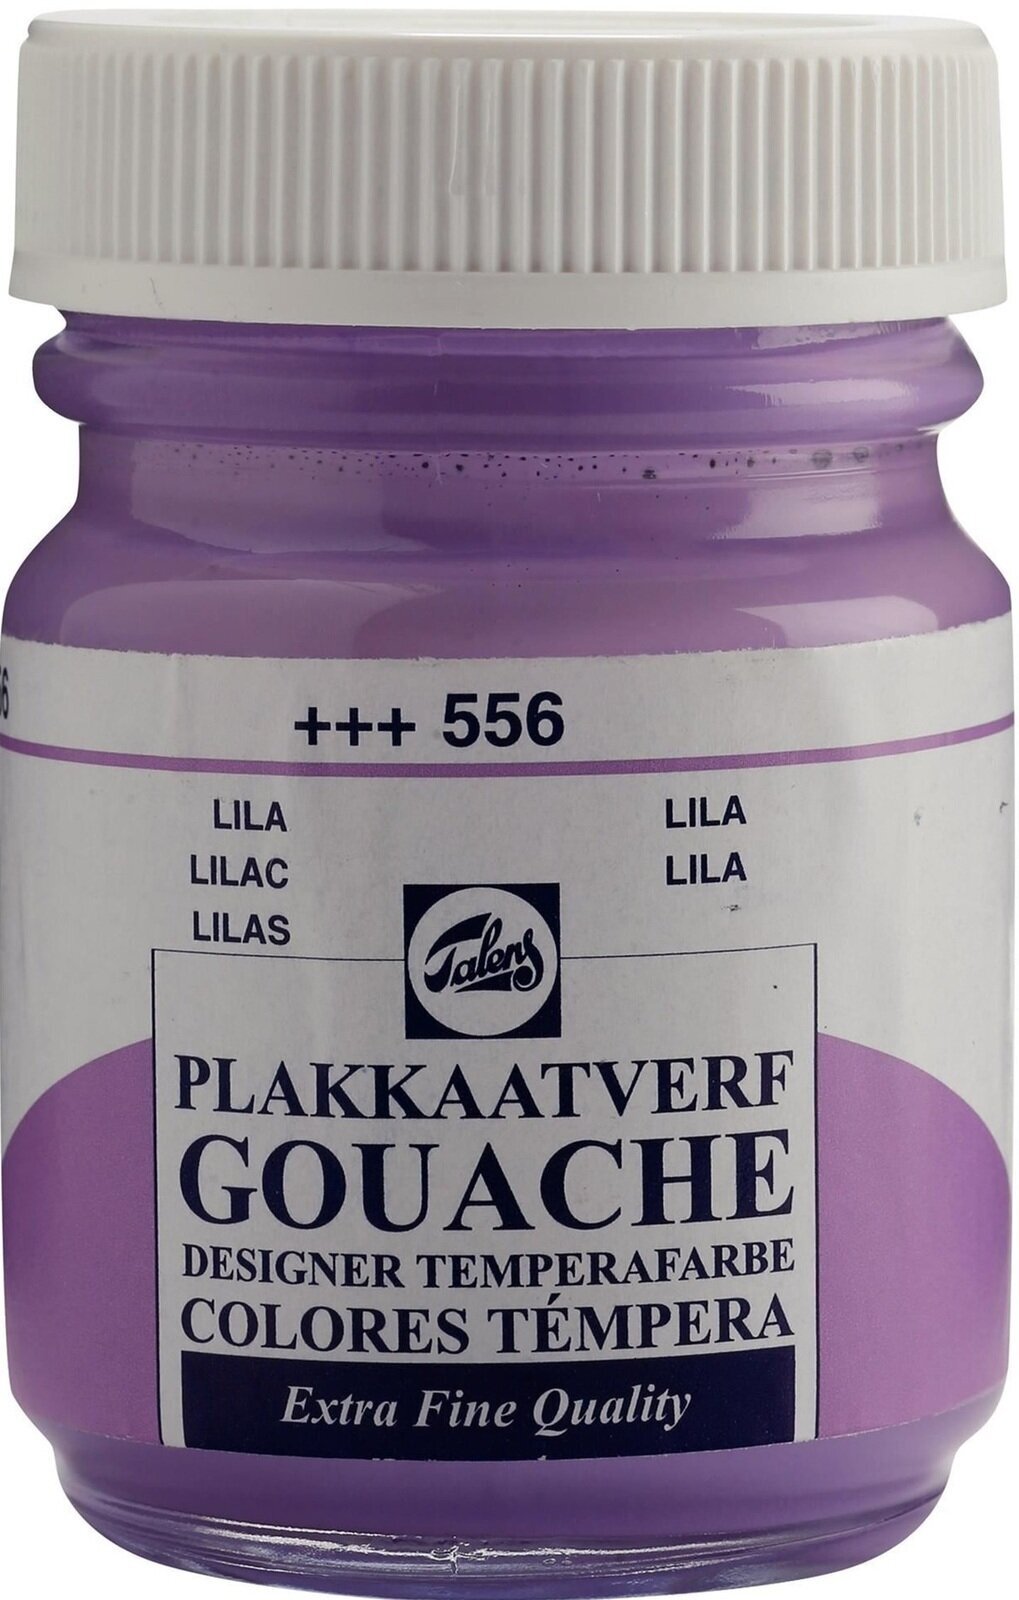 Gouache Paint Talens Gouache Extra Fine Gouache Paint 50 ml Lilac